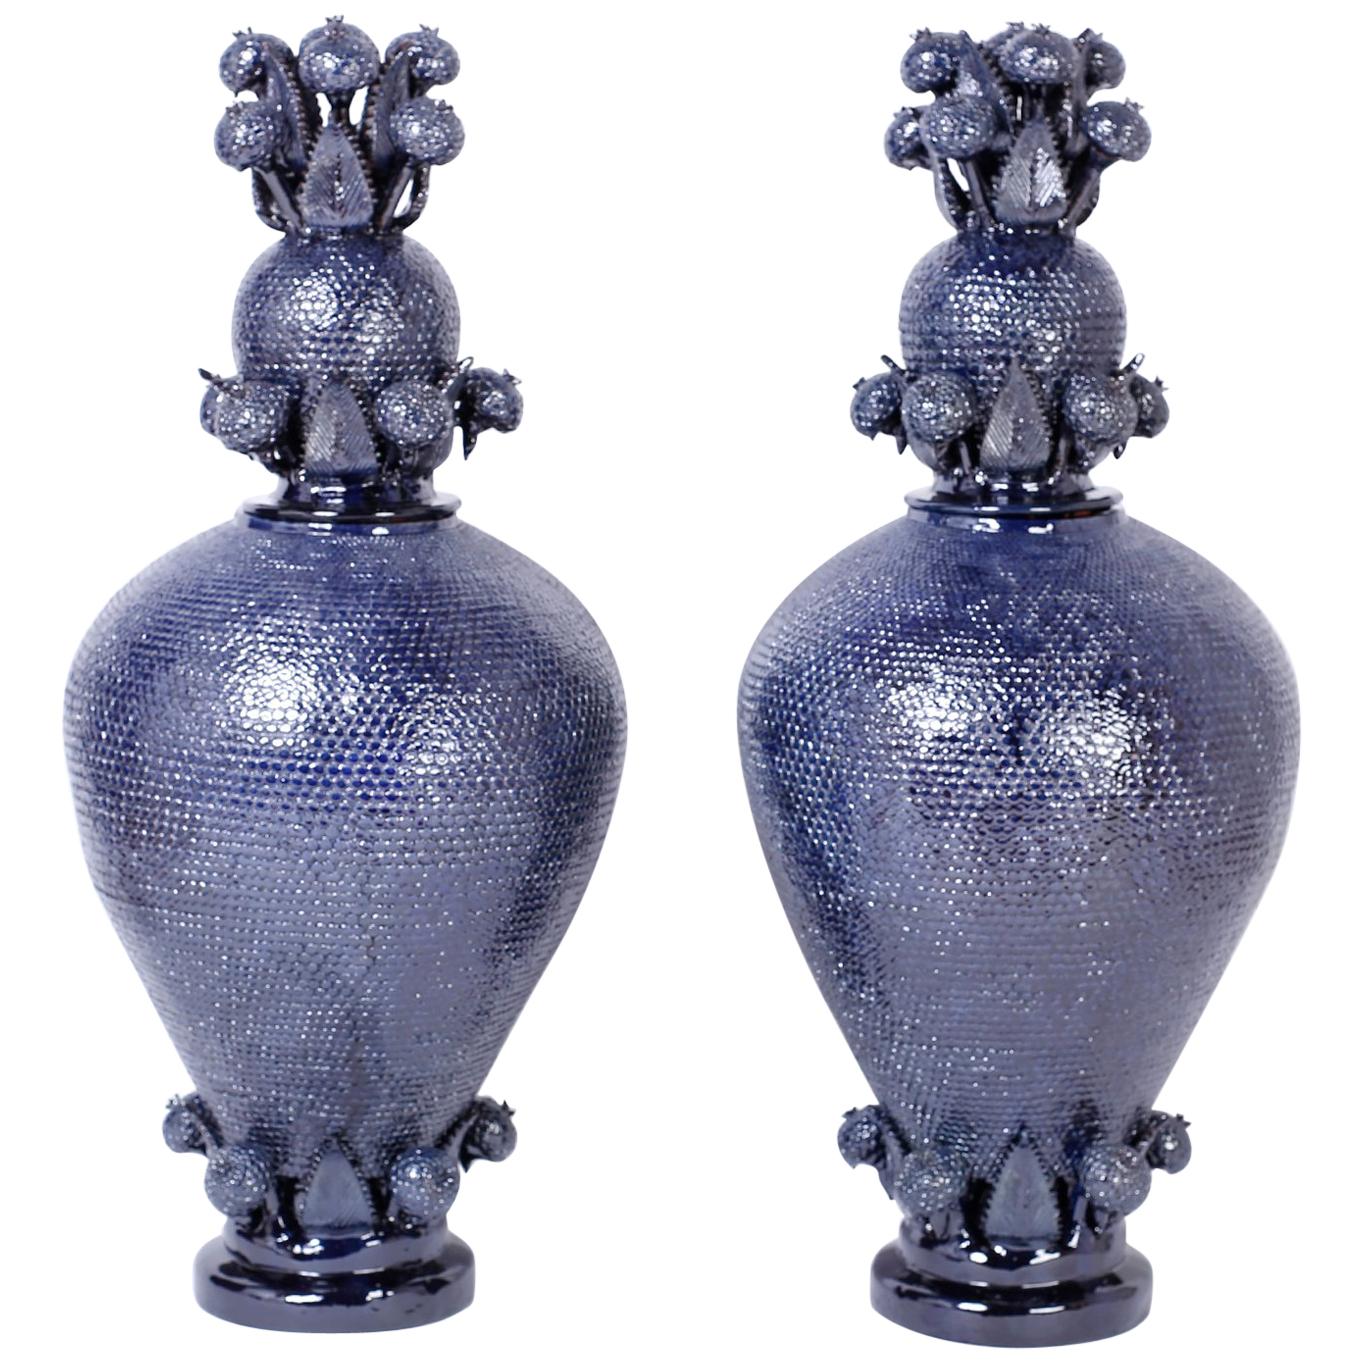 Giant Pair of Blue Glazed Terracotta or Pottery Lidded Urns